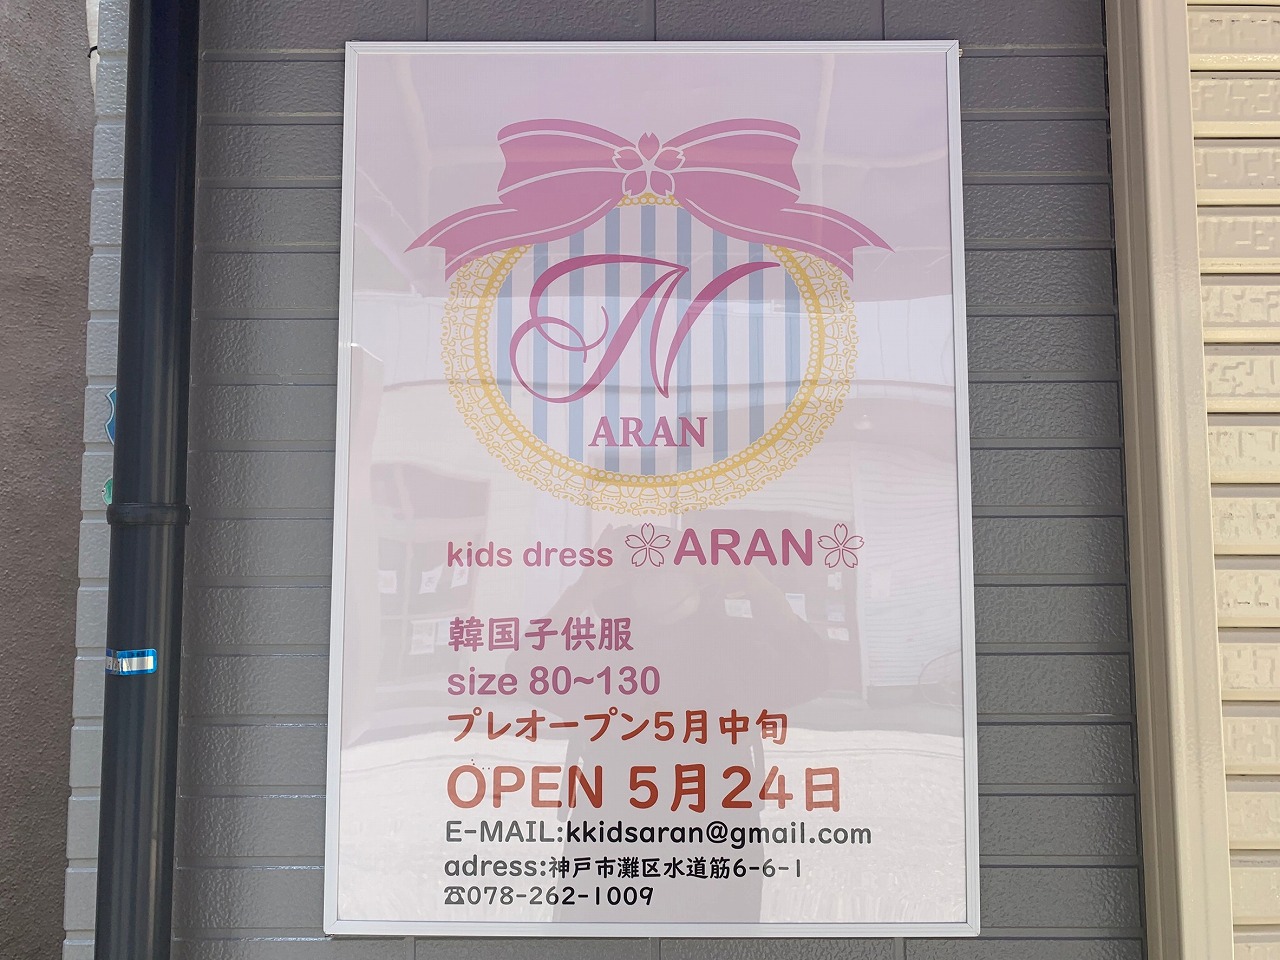 神戸市灘区 珍しいのでは 韓国子供服 Kids Dress Aran 水道筋商店街に 5月24日オープン 号外net 神戸市灘区 東灘区